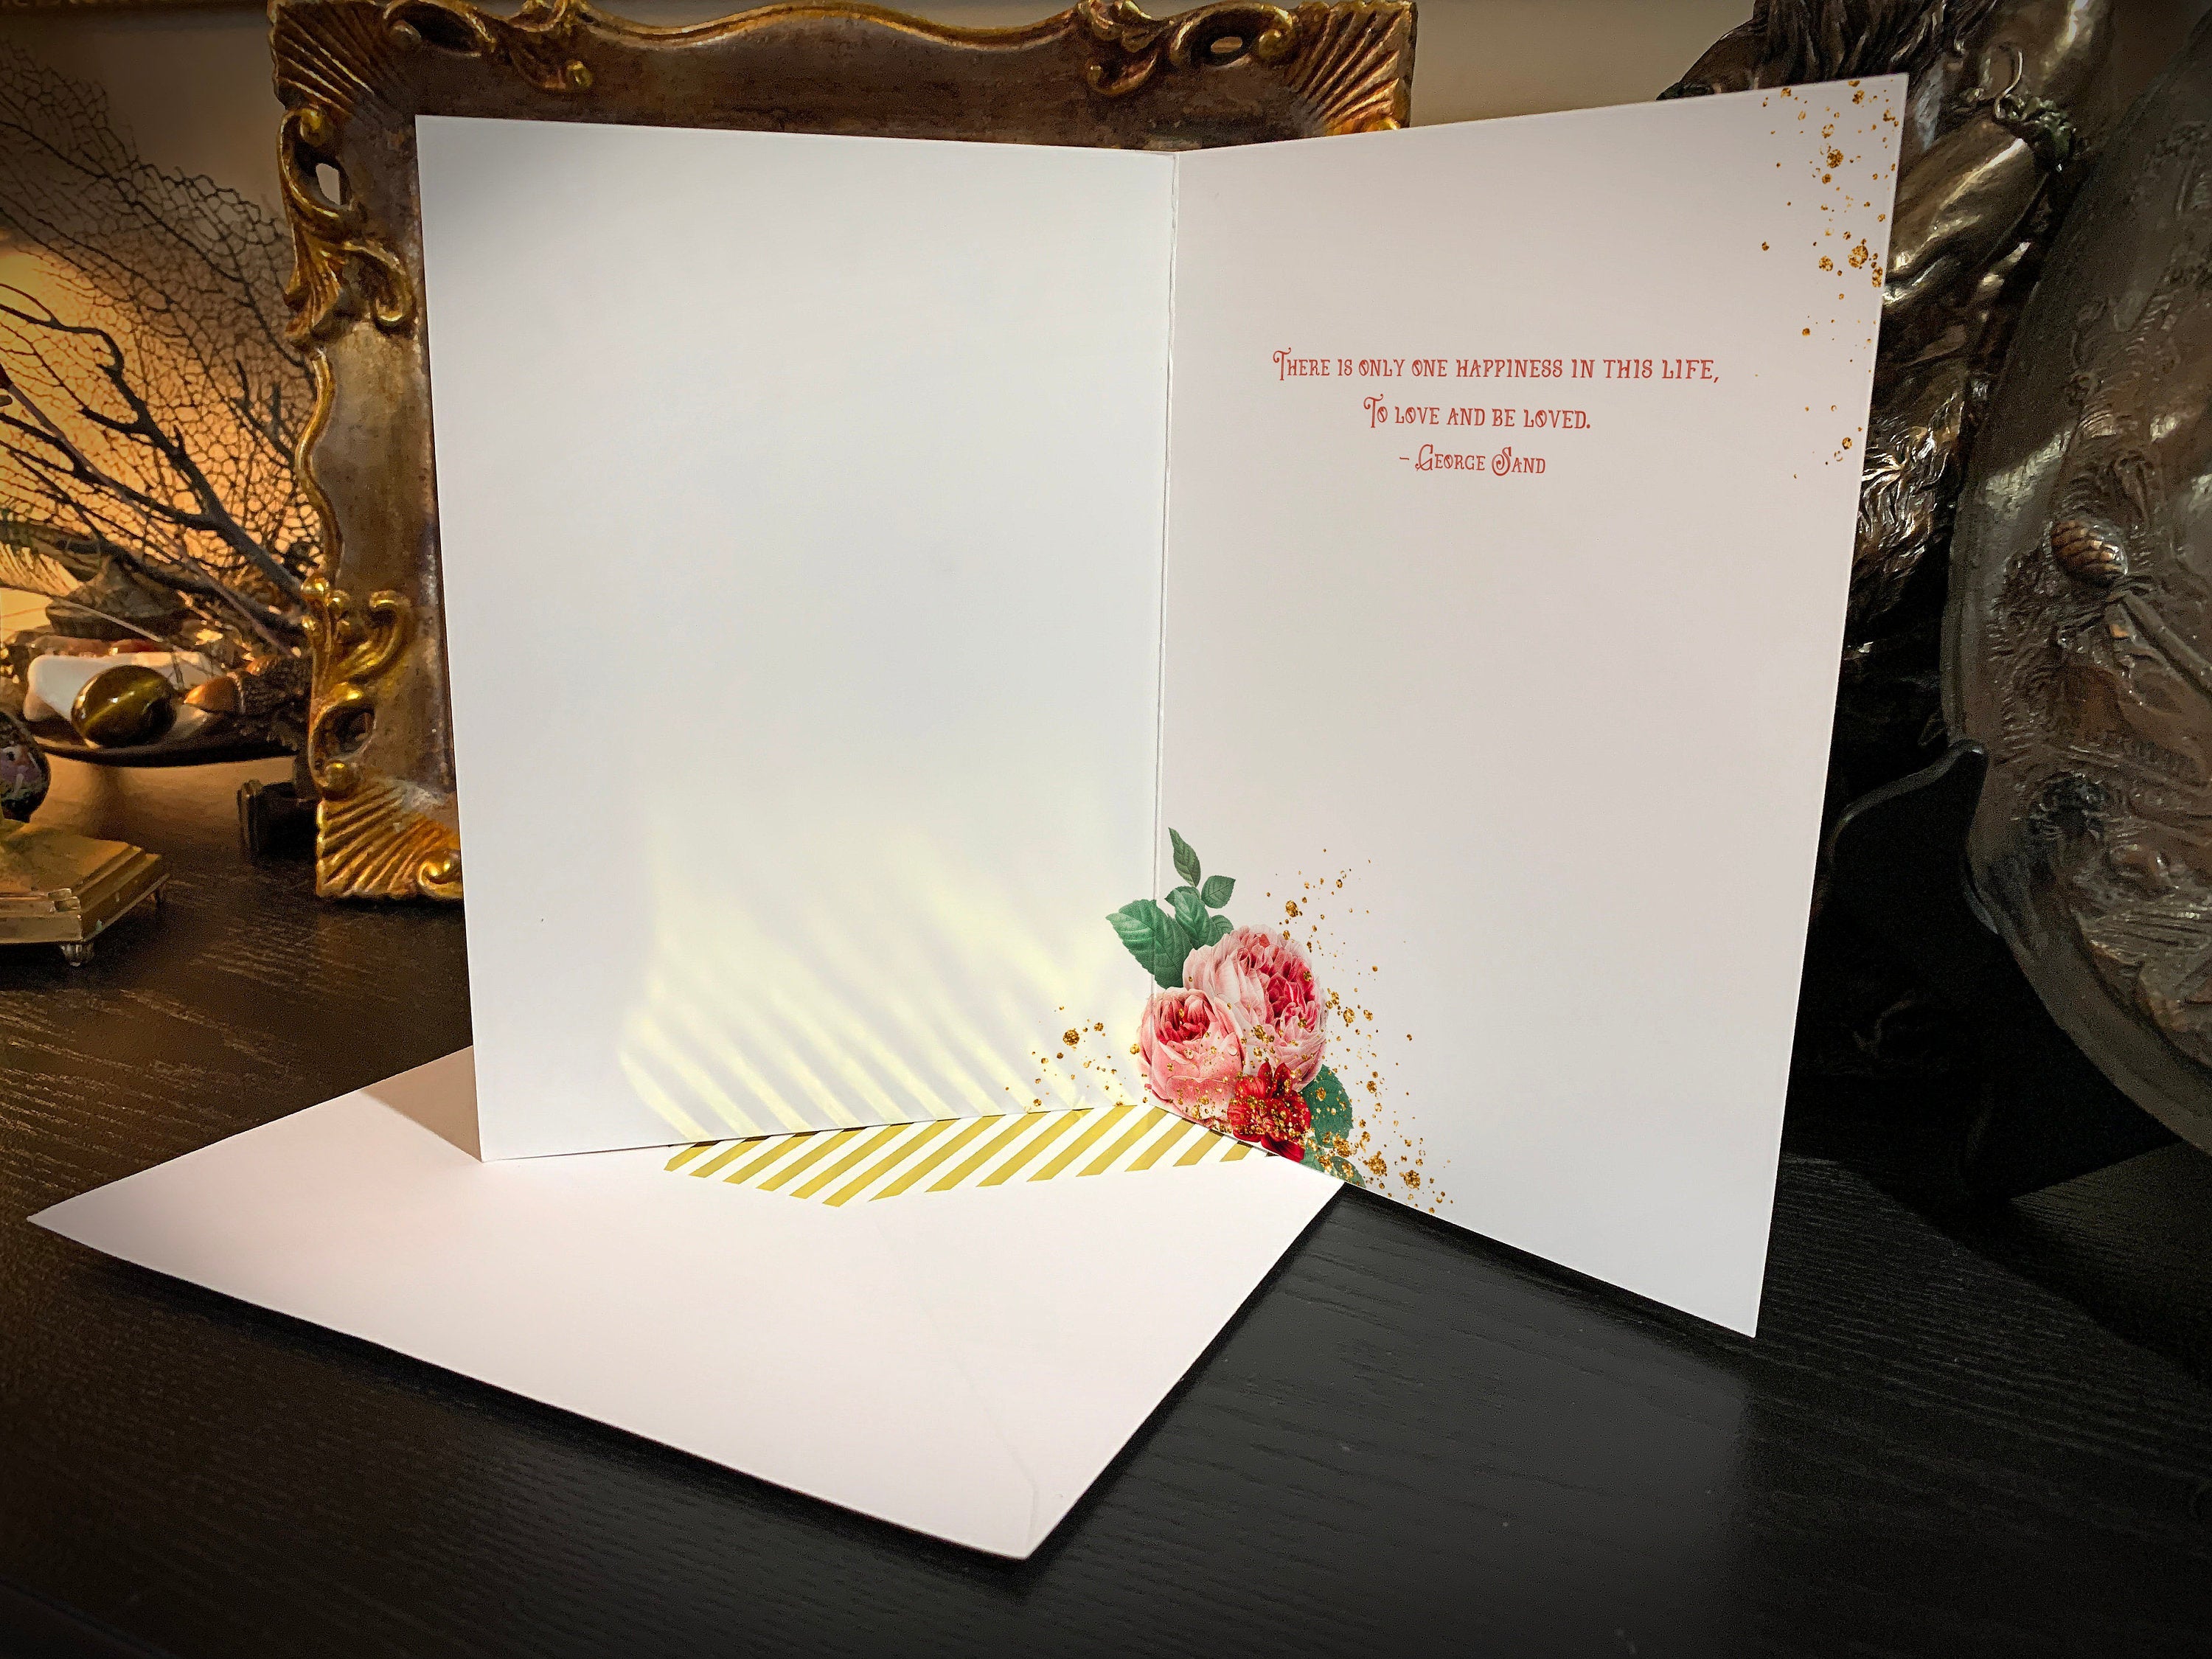 Be Mine, Vintage Victorian Valentine Greeting Card with Elegant Gold Foil Envelopes, 1 Card/Envelope